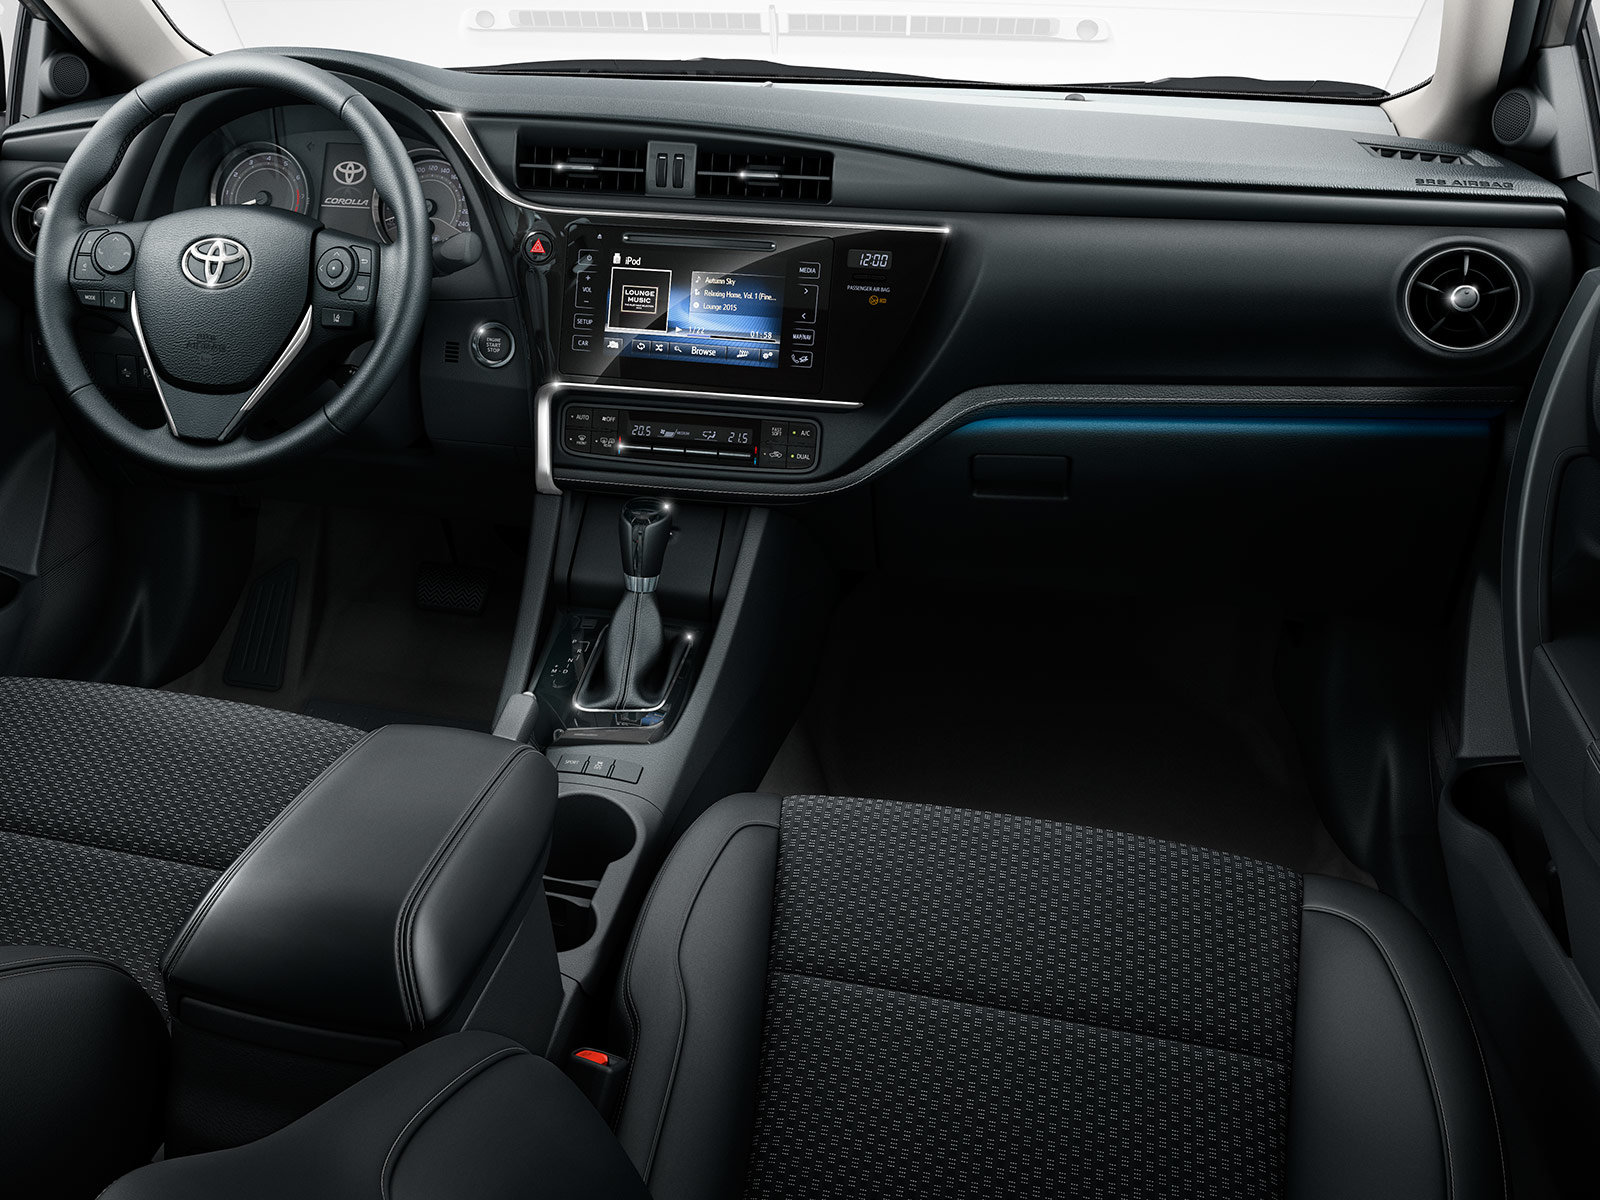 Toyota Corolla po důkladné modernizaci míří na český trh.